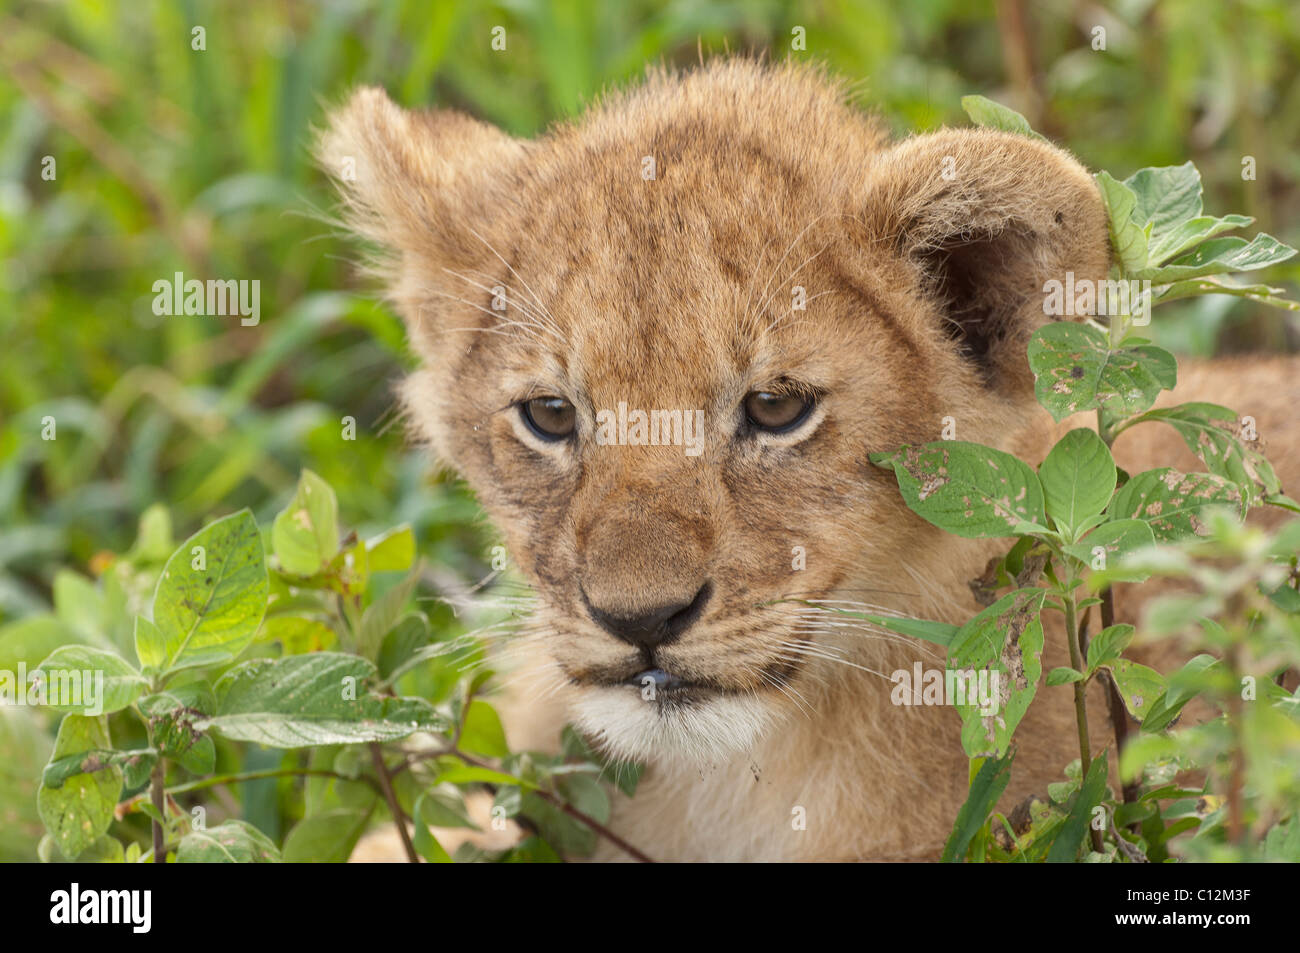 Stock Photo closeup retrato de un cachorro de león que está descansando en el verde de la vegetación. Foto de stock